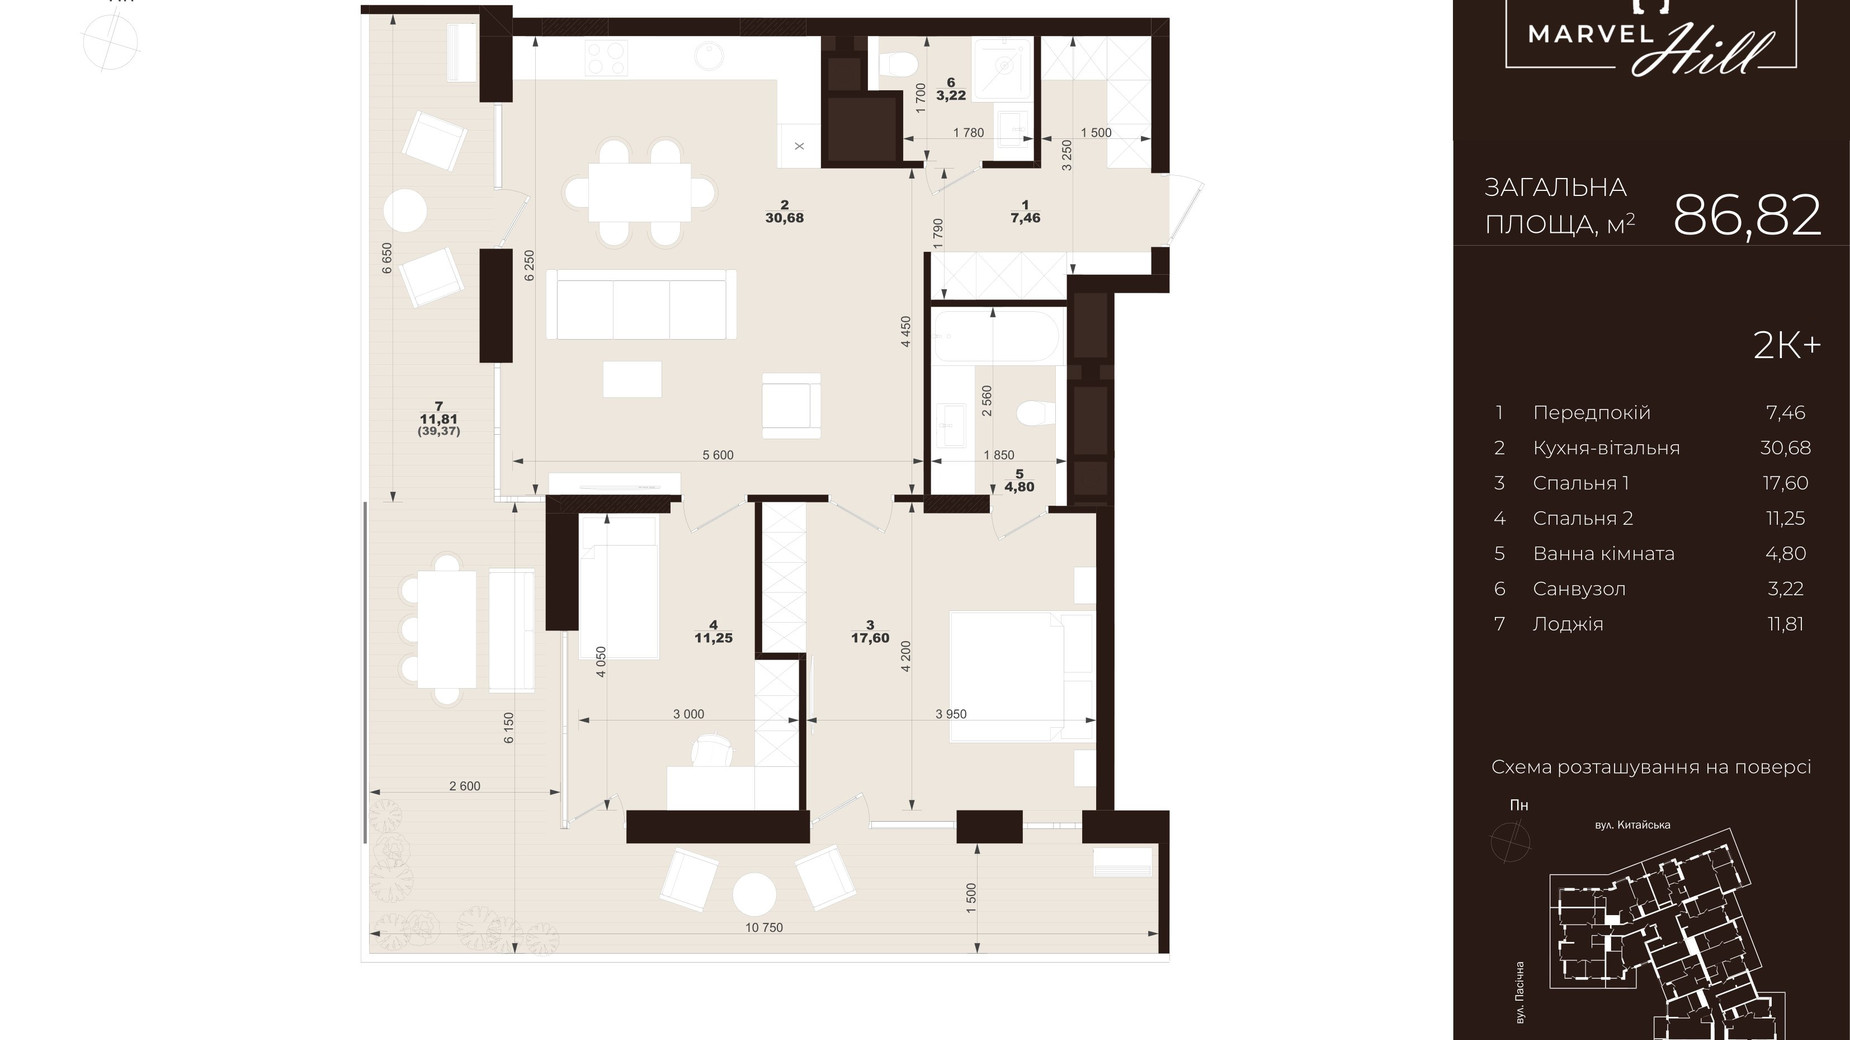 Планировка 2-комнатной квартиры в ЖК Marvel Hill 86.82 м², фото 602106